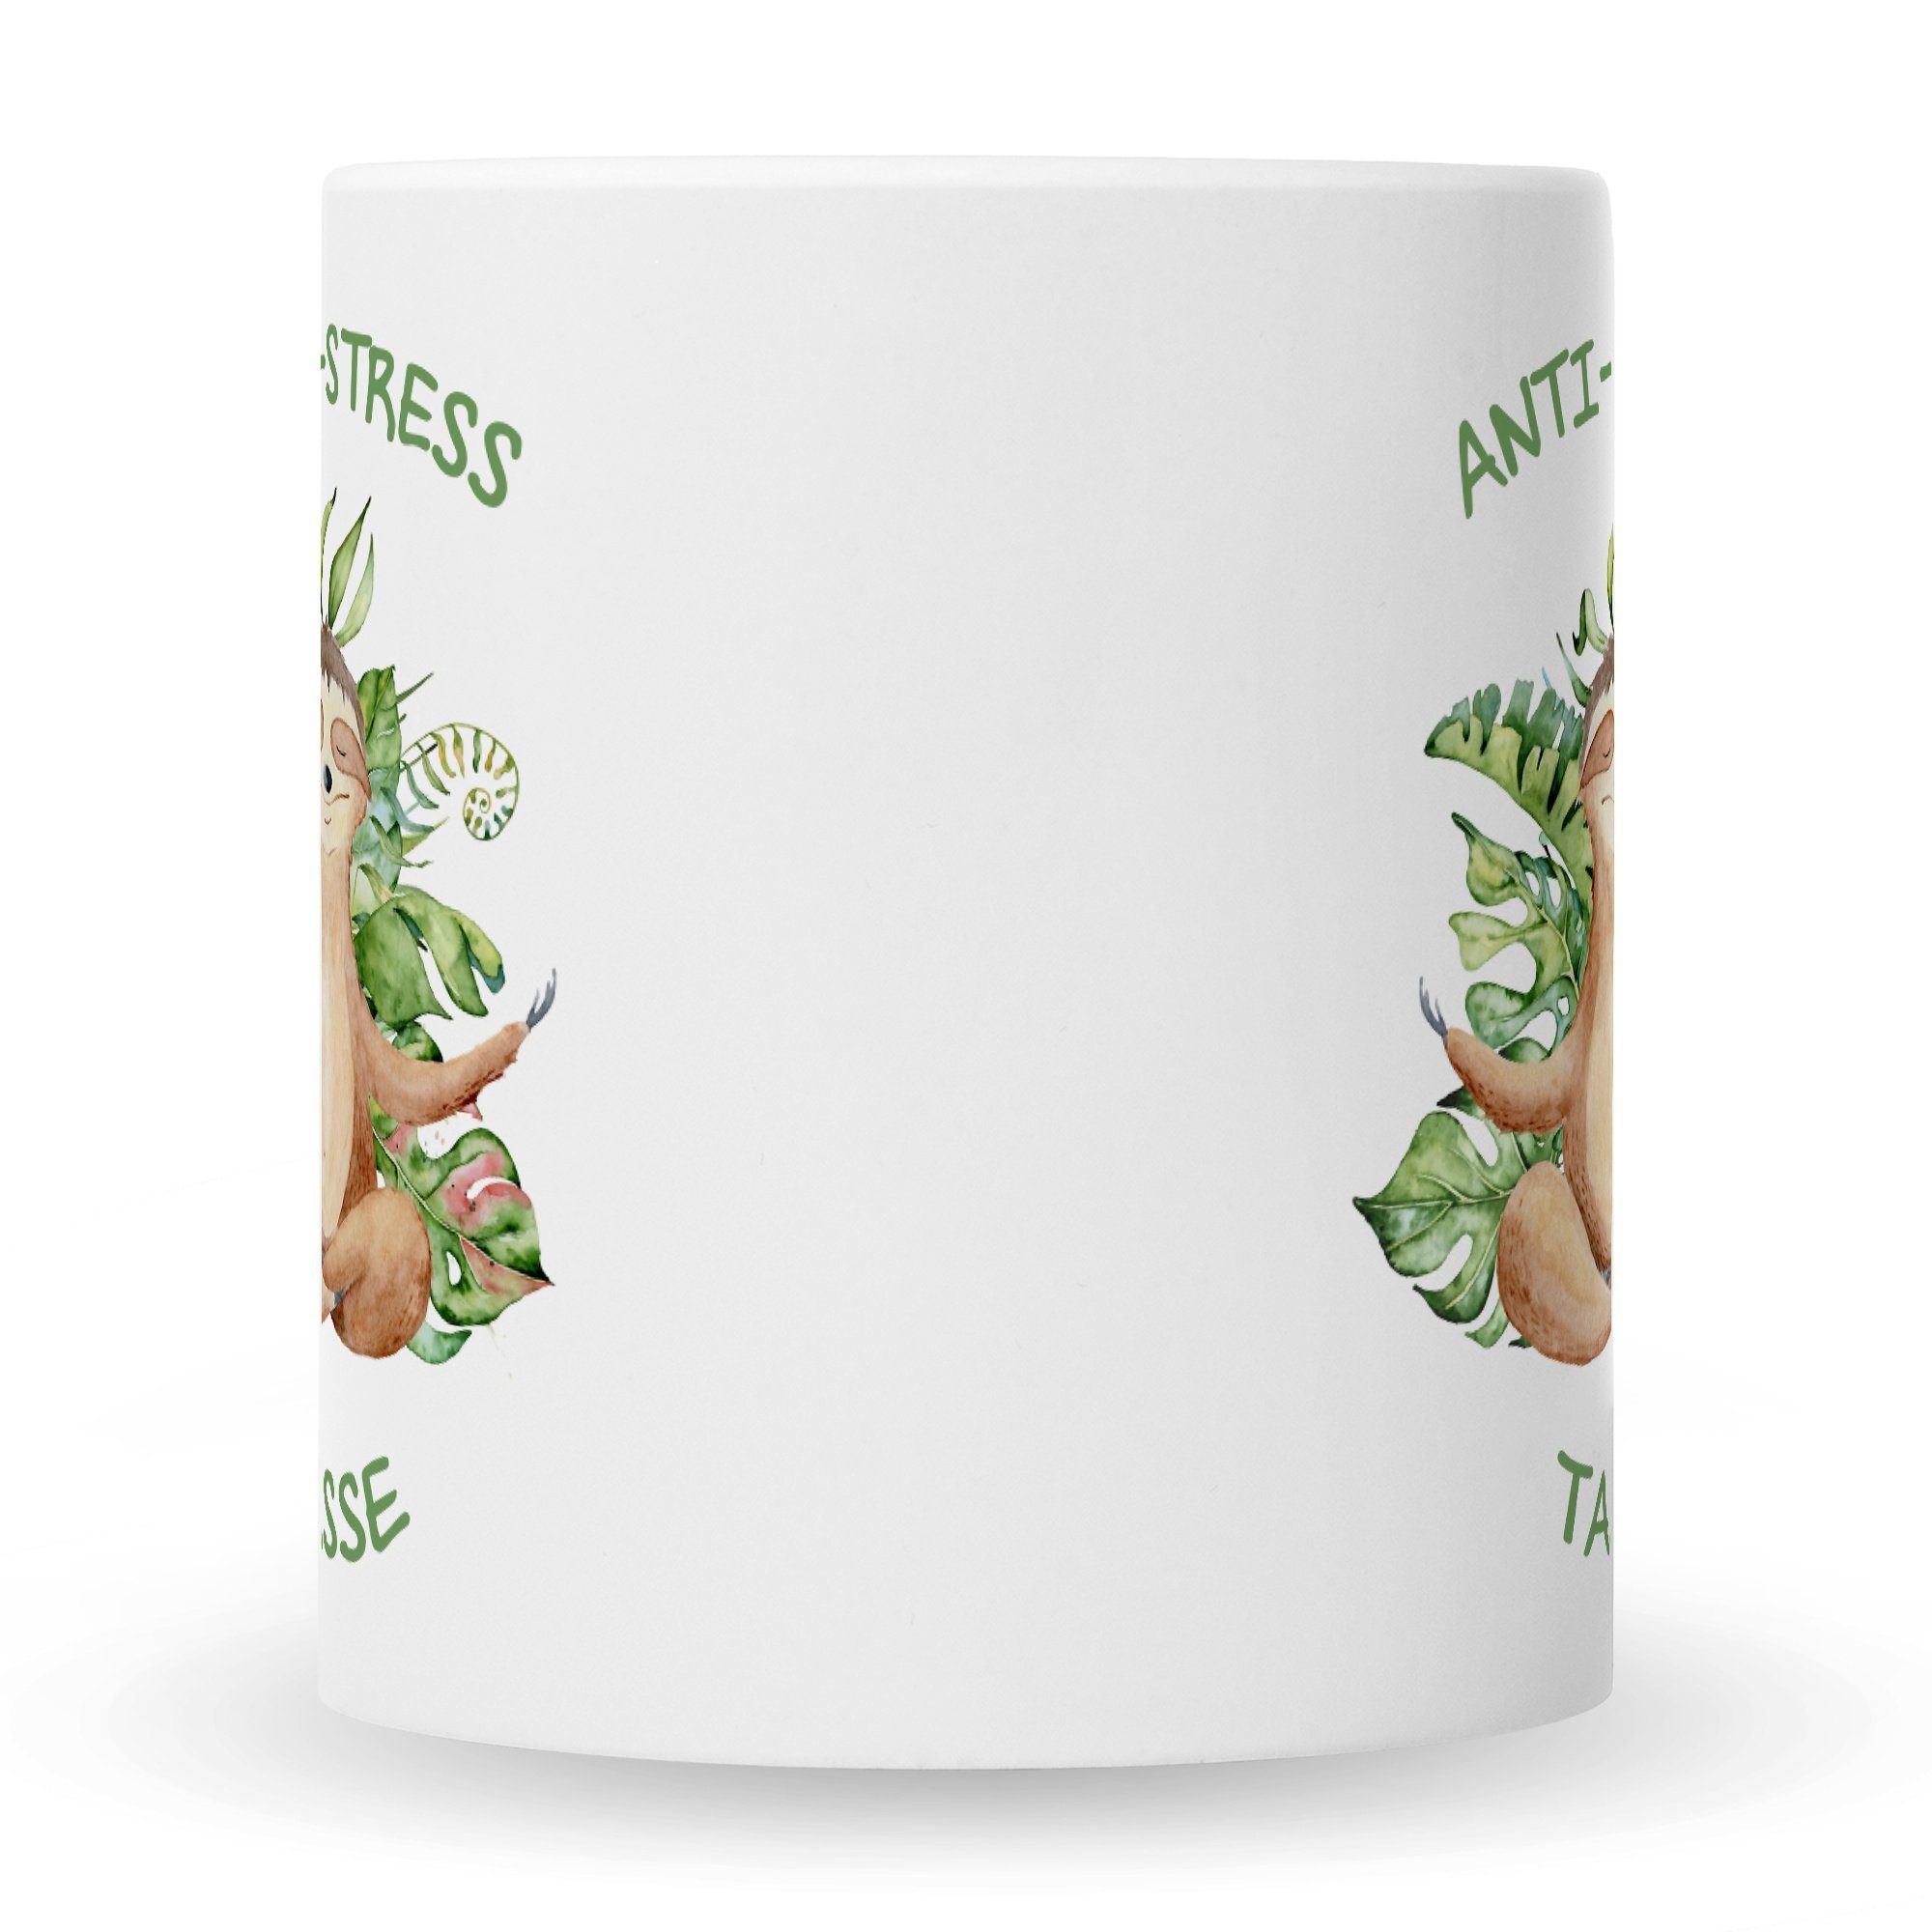 GRAVURZEILE Tasse Bedruckte Ihn & Weiß Spruch - Sie für mit Tasse, Faultiermotiv Tasse Keramik, mit Anti-Stress Spruchtasse lustige